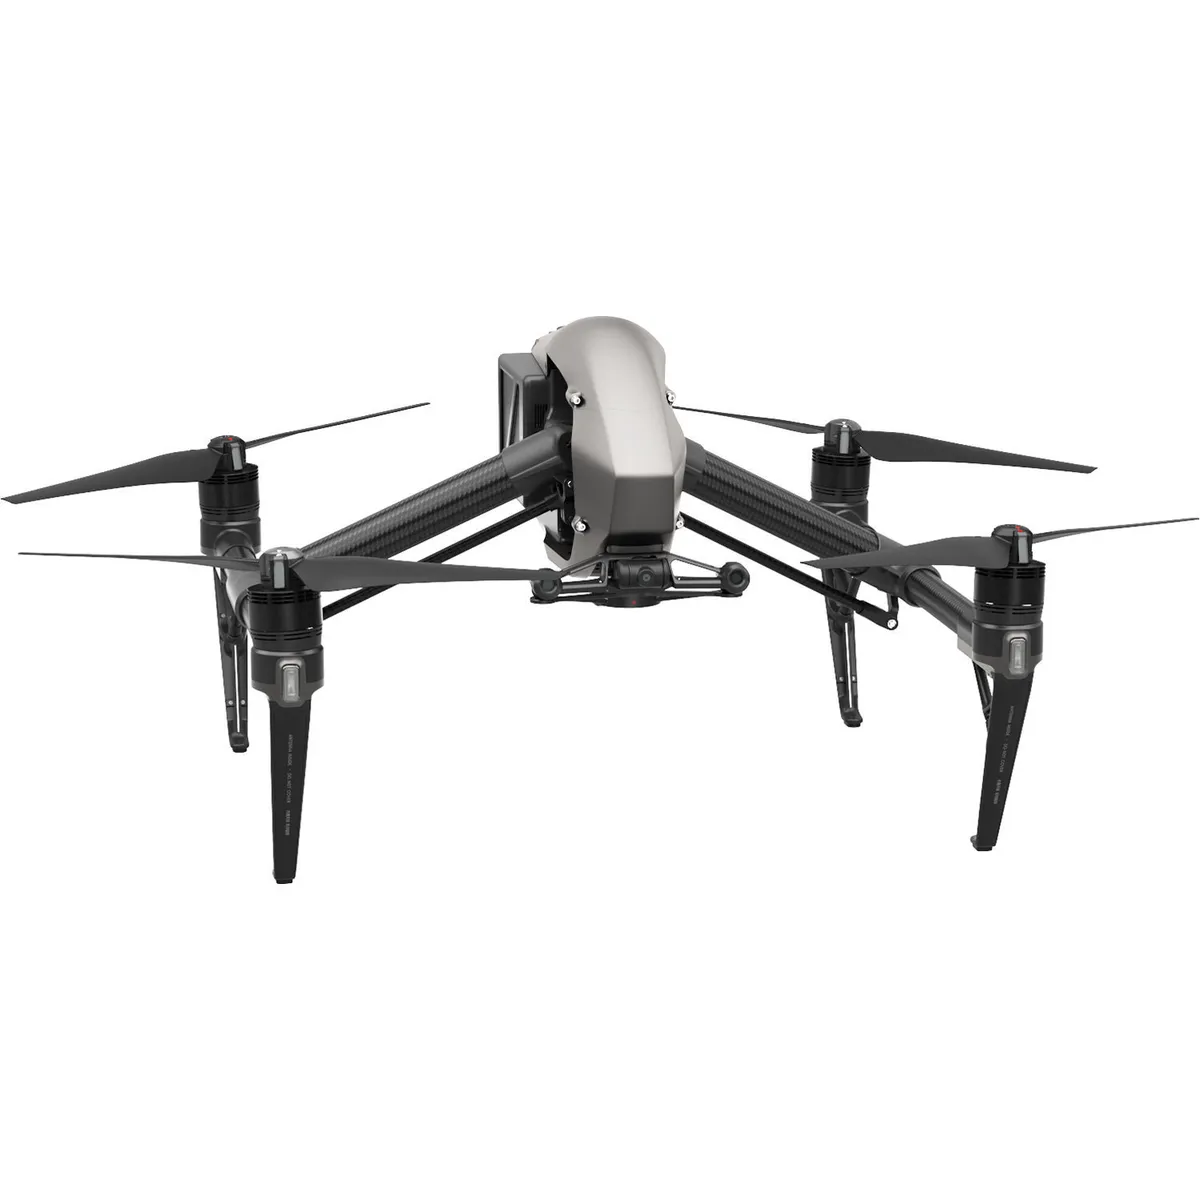 Dji Inspire 2 Solo Drone - Inspire 2 Usato Garantito - Fly to Discover negozio droni Roma